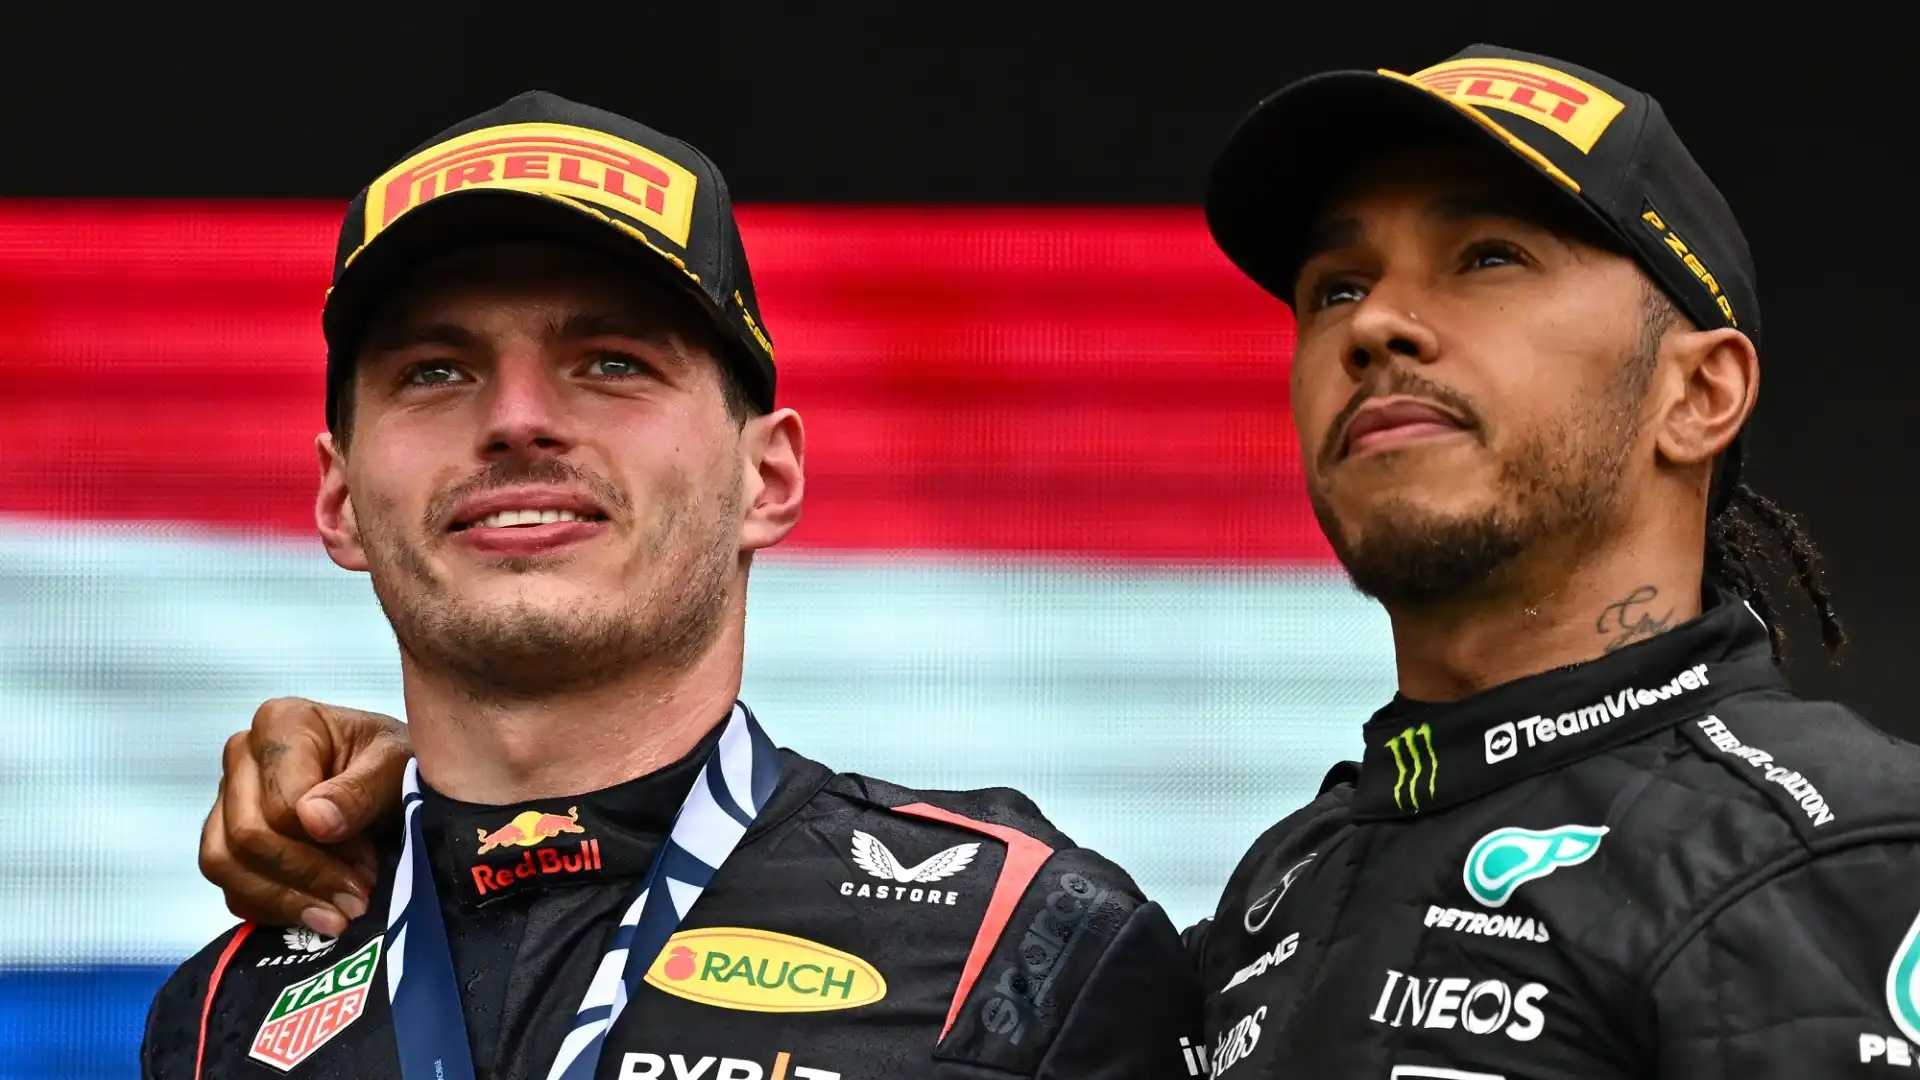 Vettel ha anche confrontato Hamilton a Verstappen: "Lewis ha dimostrato in passato di essere il migliore, ma Max sta facendo qualcosa che nessuno ha mai fatto prima"